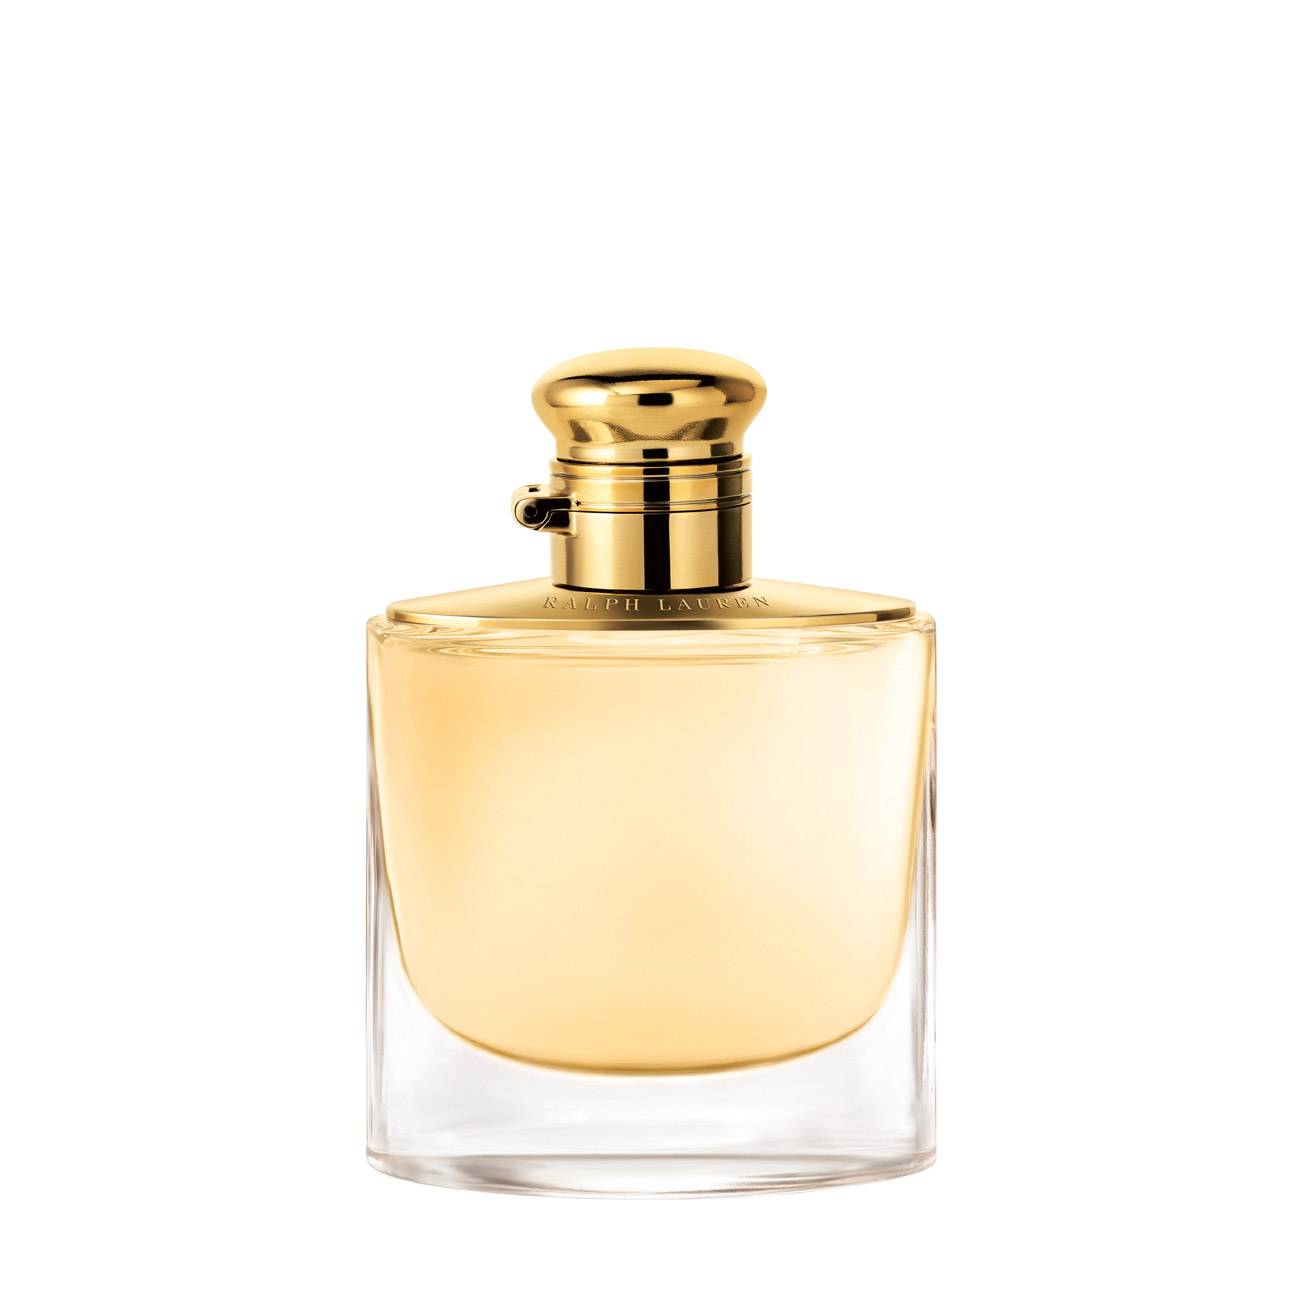 Apa de Parfum Ralph Lauren WOMAN 50ml cu comanda online